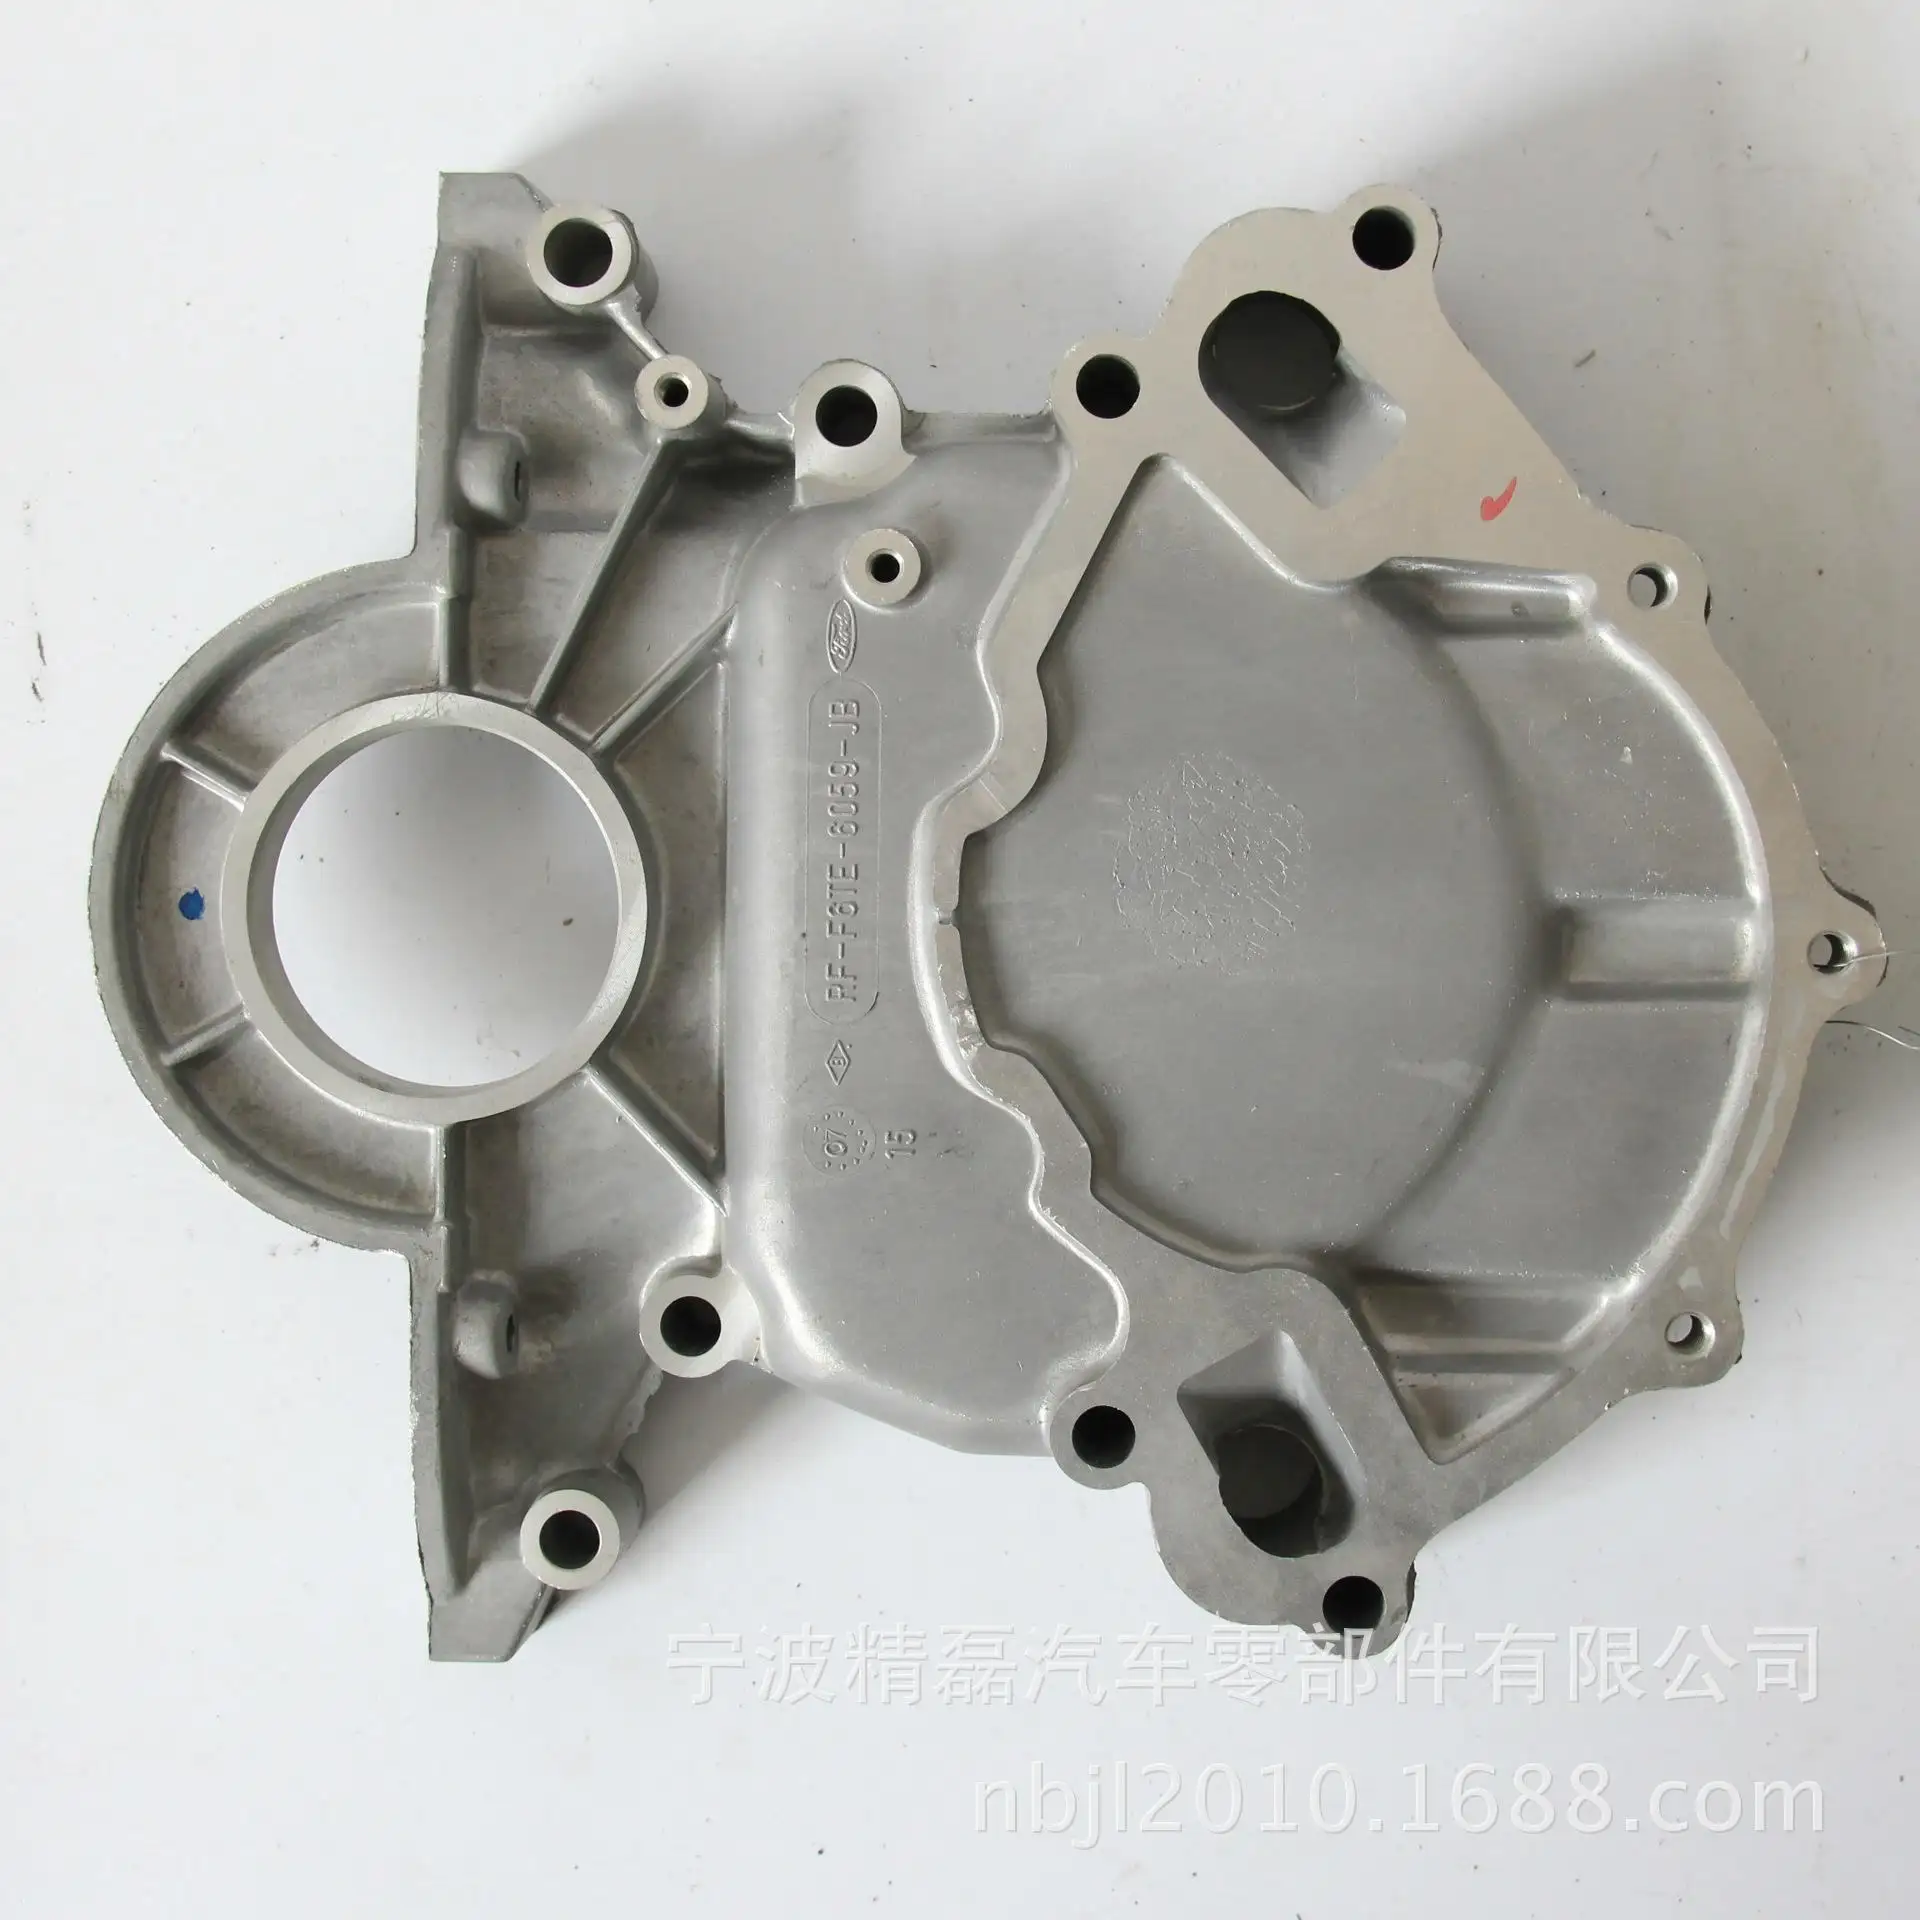 Piezas de acero fundido de hierro y aluminio, piezas de motor de motocicleta fundidas de inversión de acero de precisión